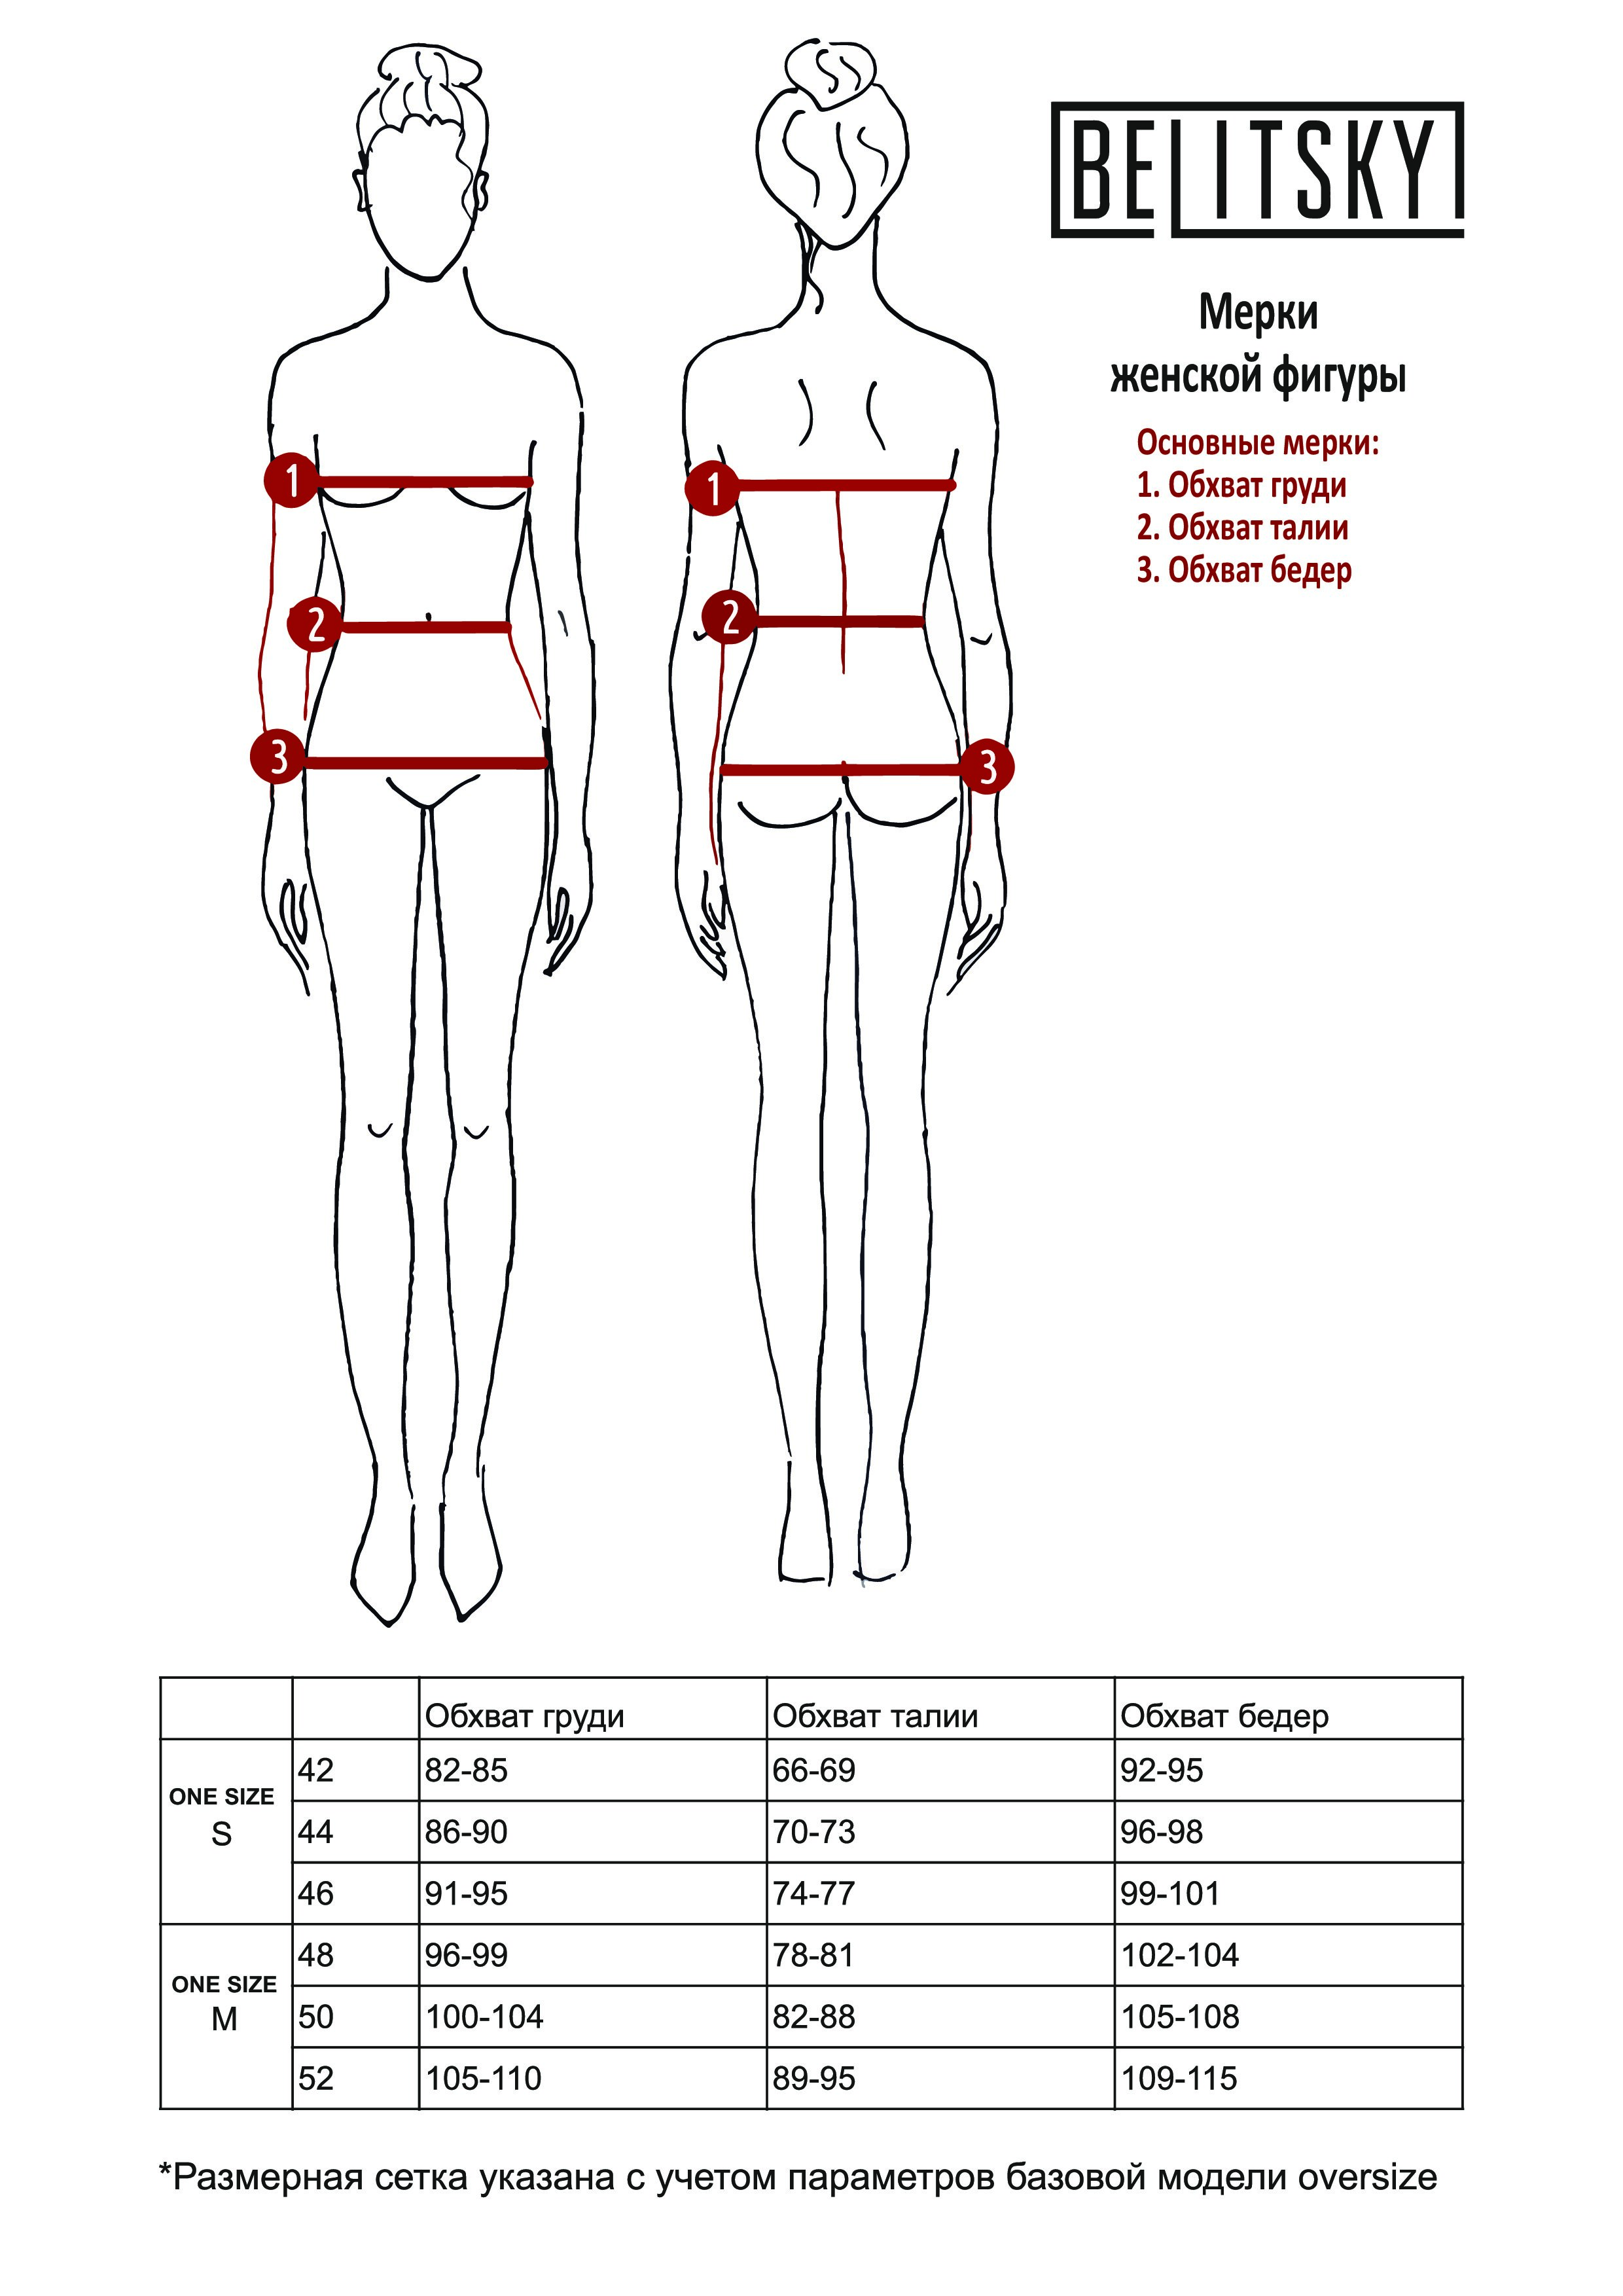 как измерить обхват груди одежды у женщин фото 41